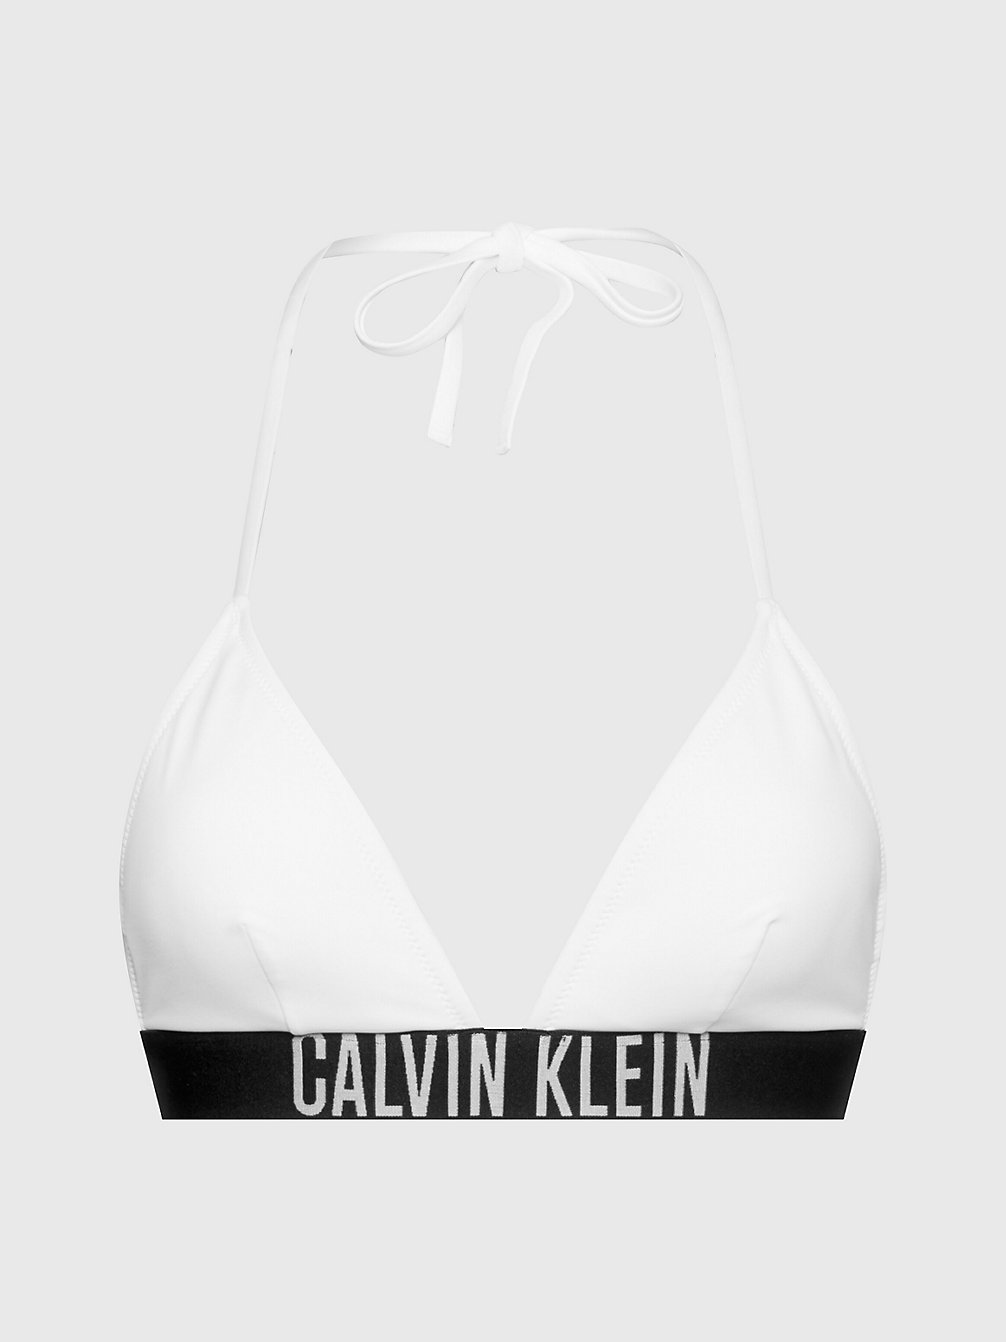 PVH CLASSIC WHITE Triangel Bikinitop - Intense Power undefined dames Calvin Klein